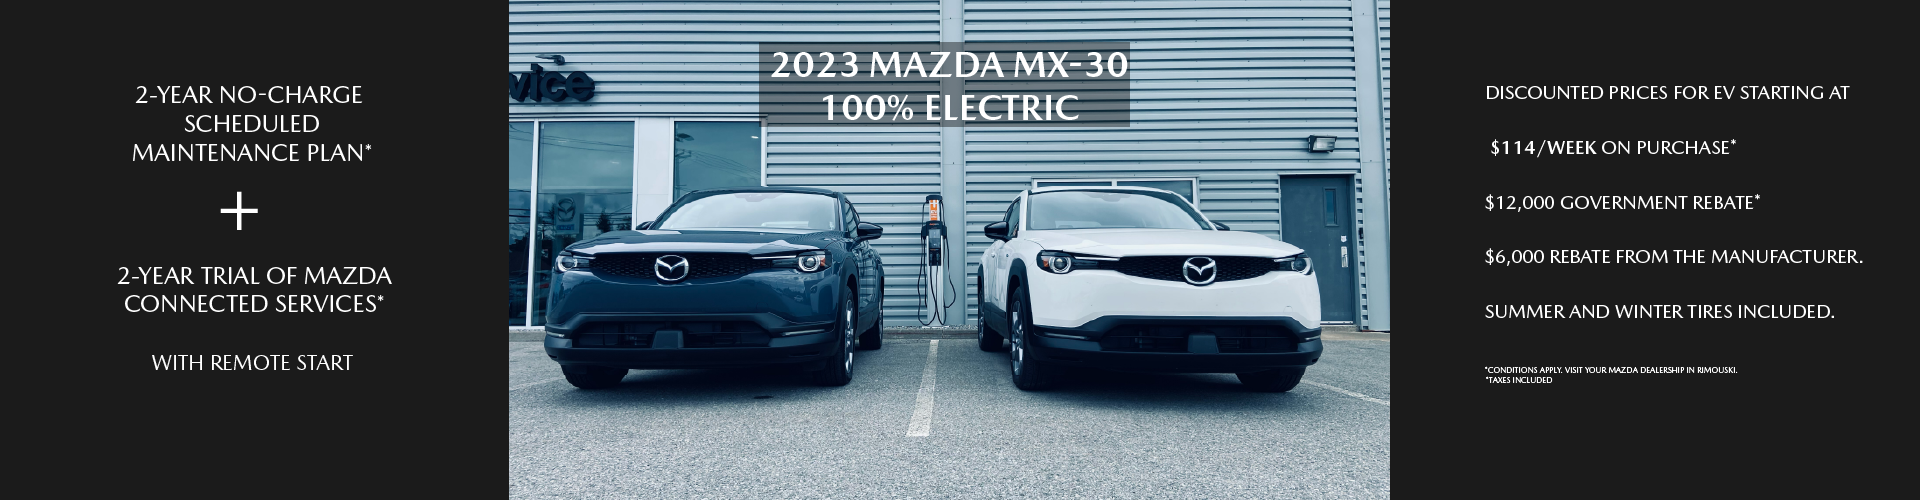 2023 Mazda MX-30 EV